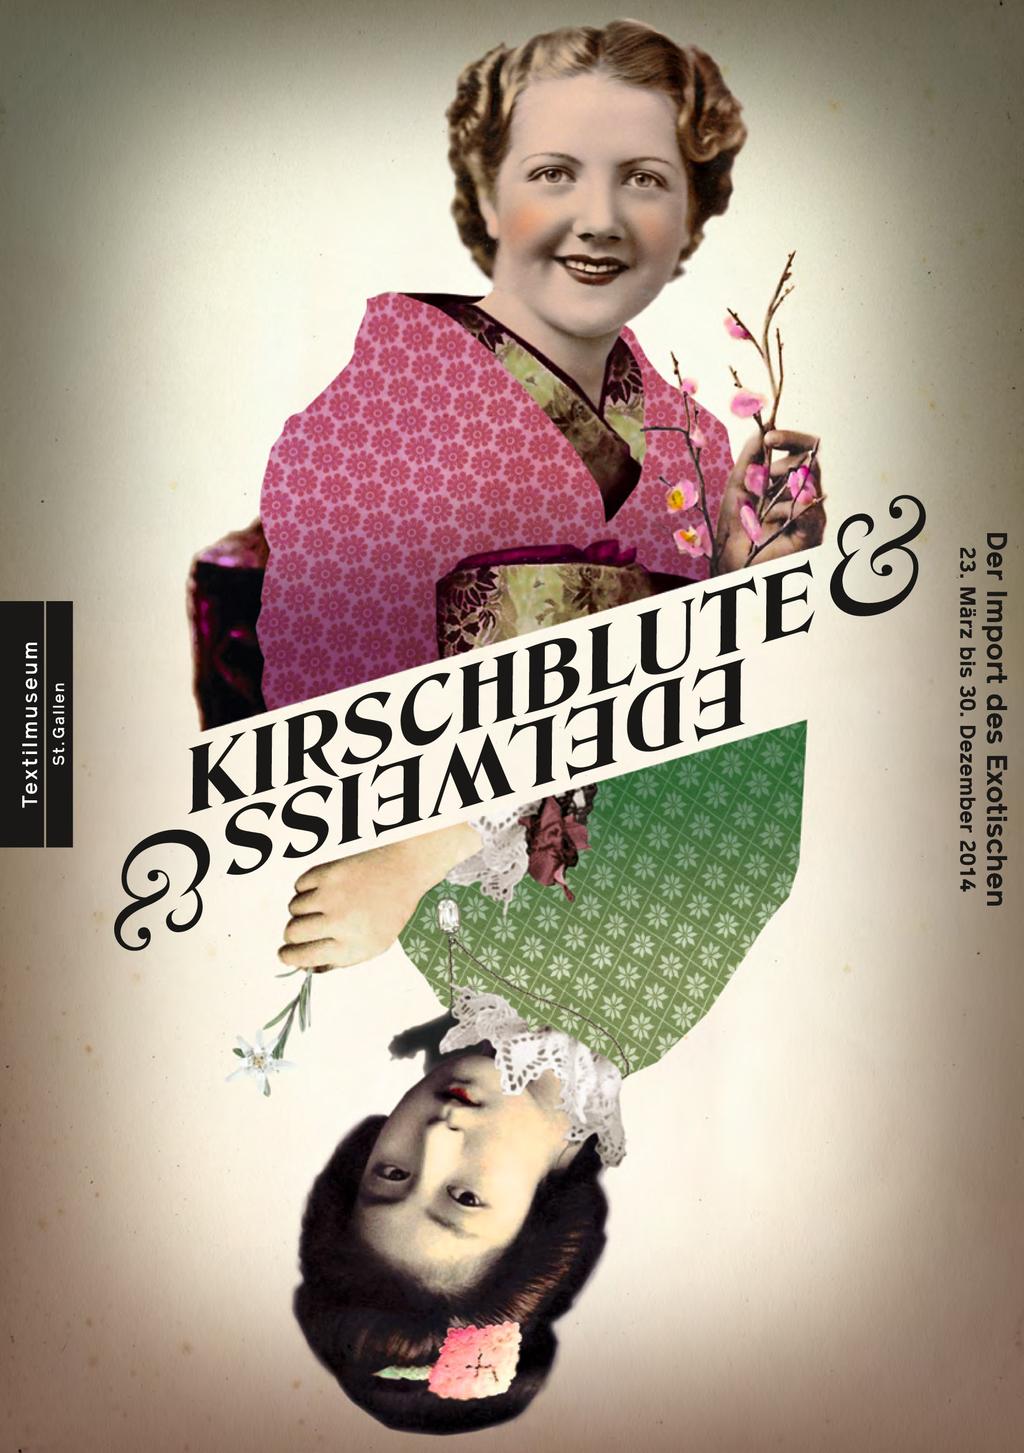 Kulturvermittlung im Textilmuseum 2014 Das Textilmuseum St. Gallen eröffnet am 23.3.14 die neue Ausstellung Kirschblüte & Edelweiss.